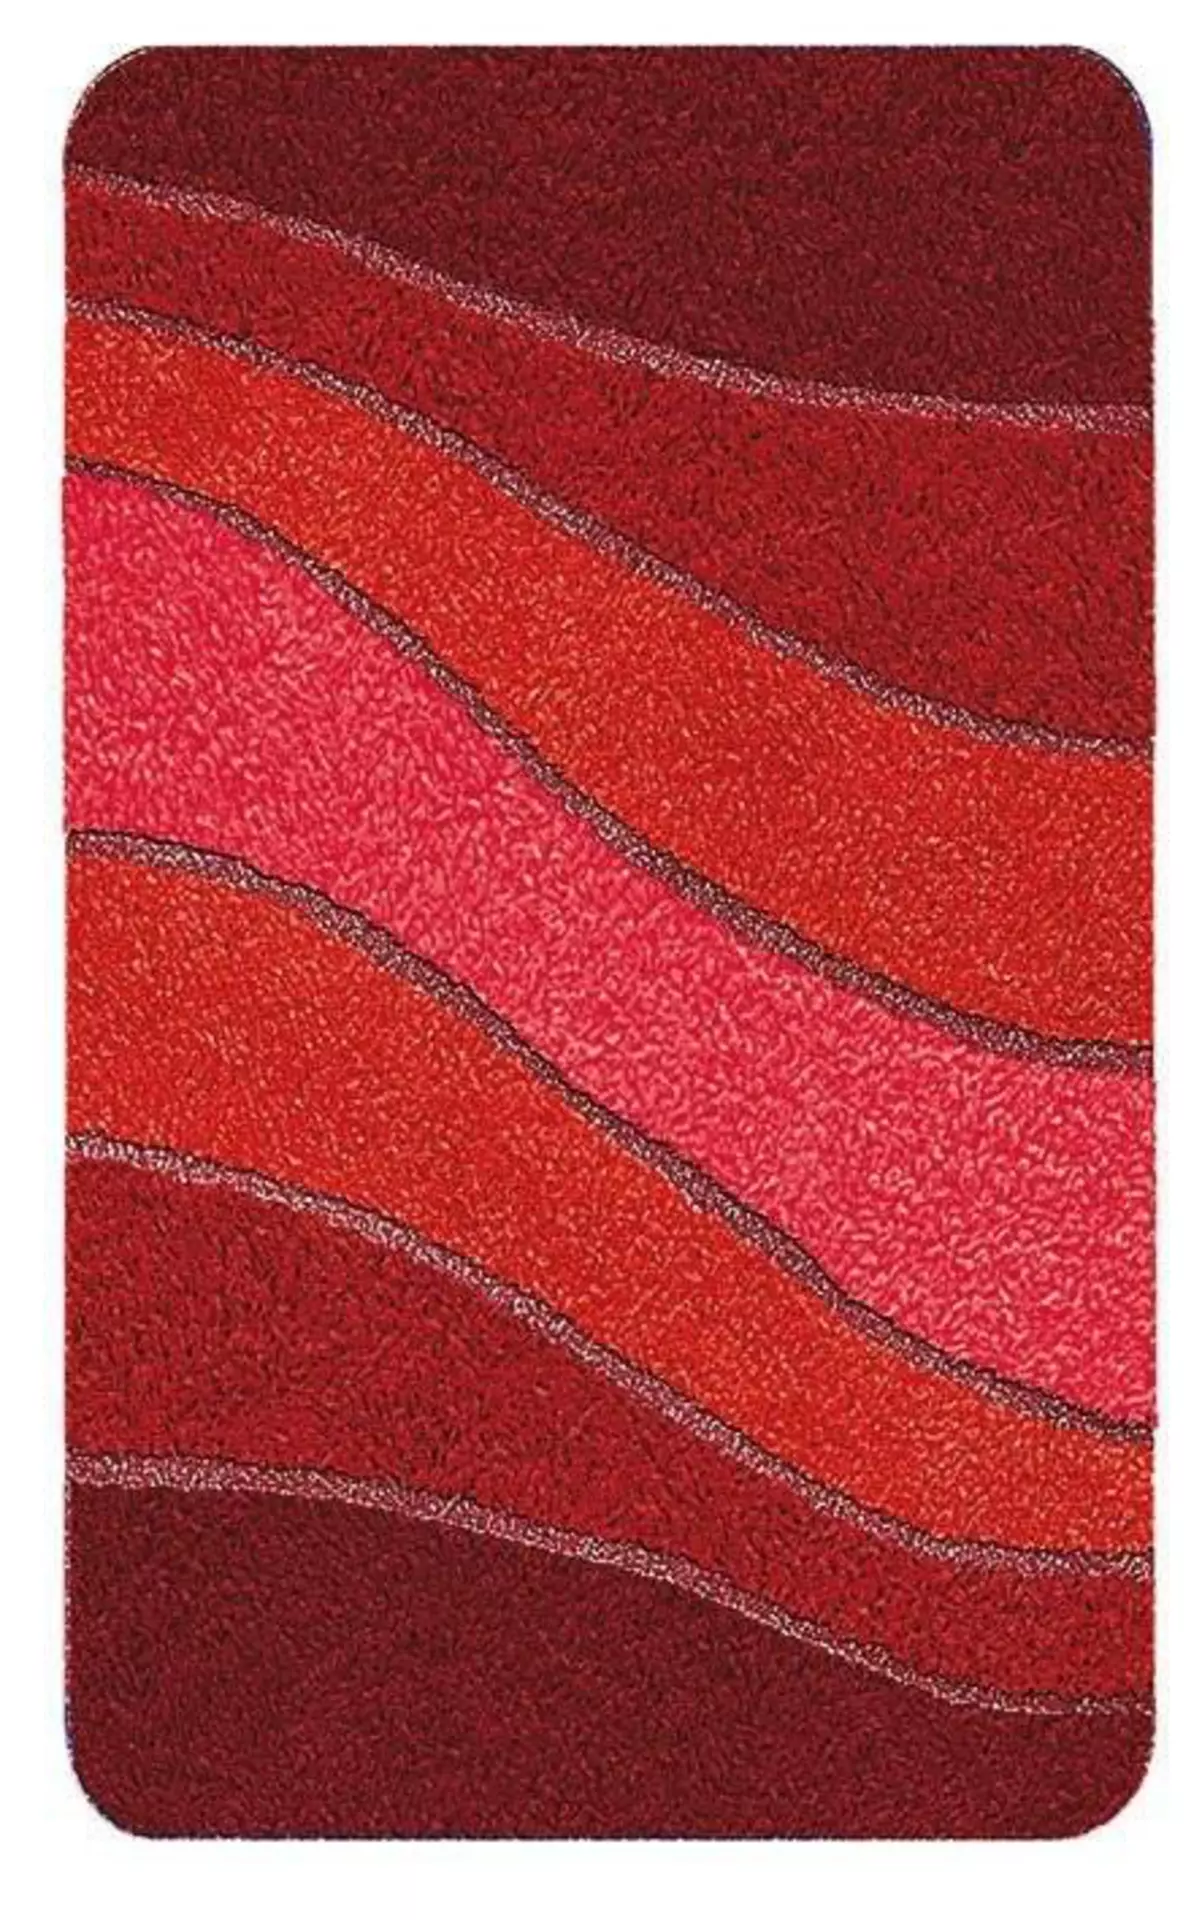 Badteppich Ocean Meusch Textil 120 x 2 x 70 cm